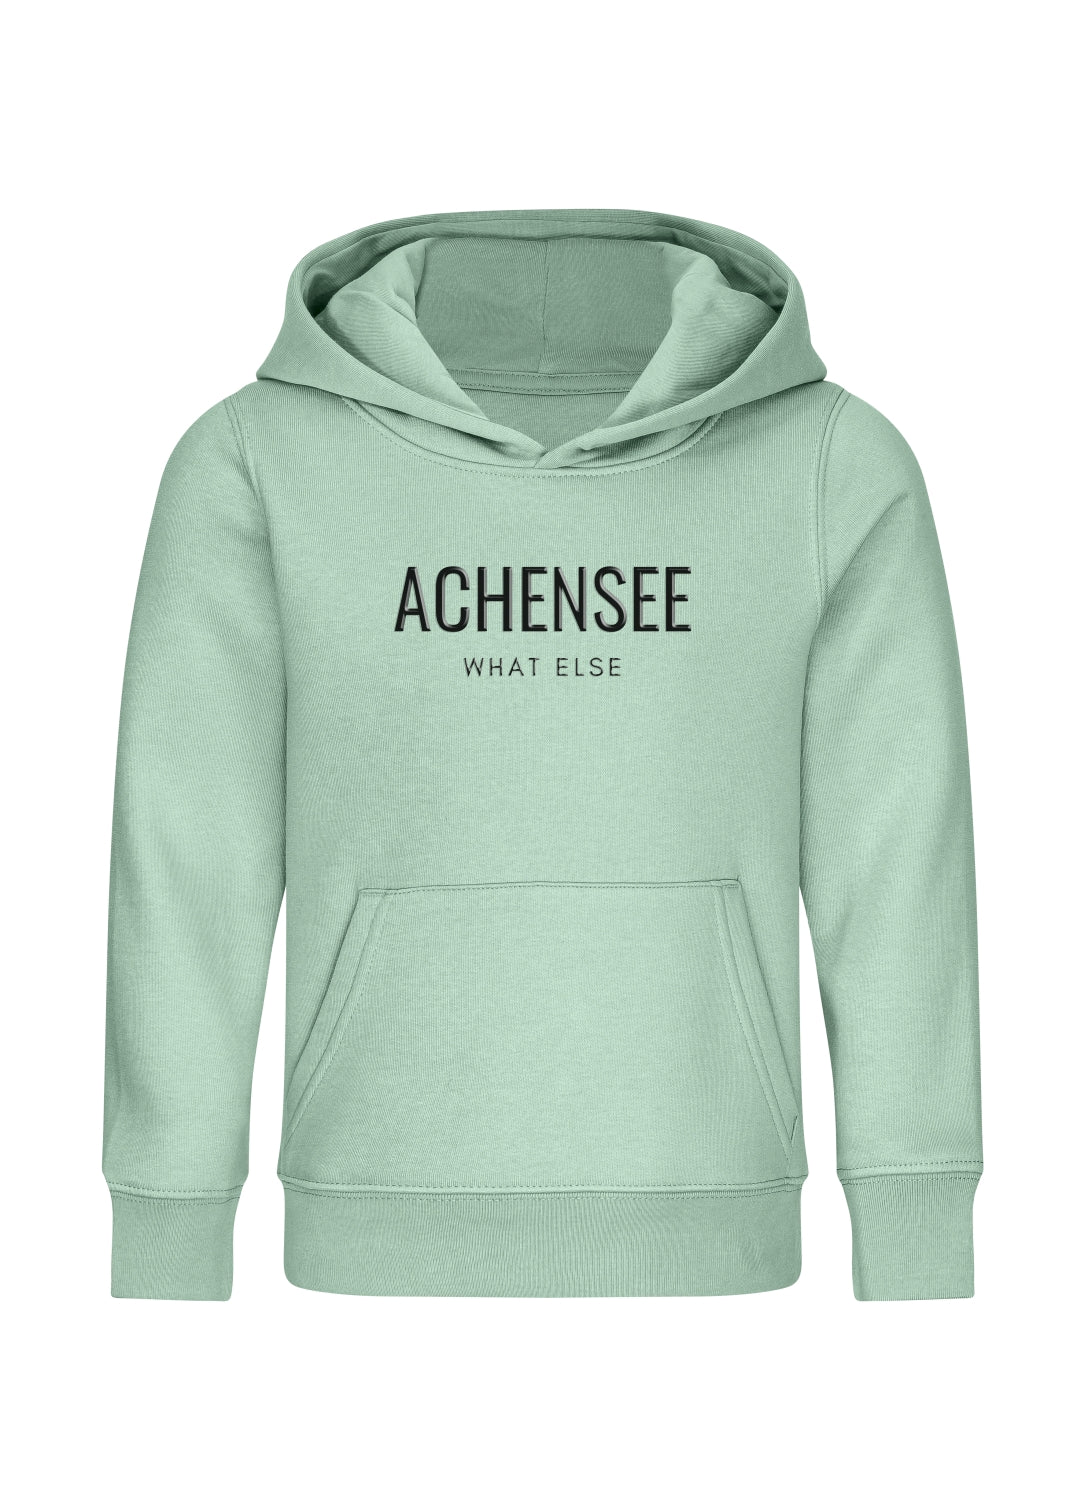 Achensee - What Else (Hoodie Kinder) Achensee - What Else (Hoodie Kinder)